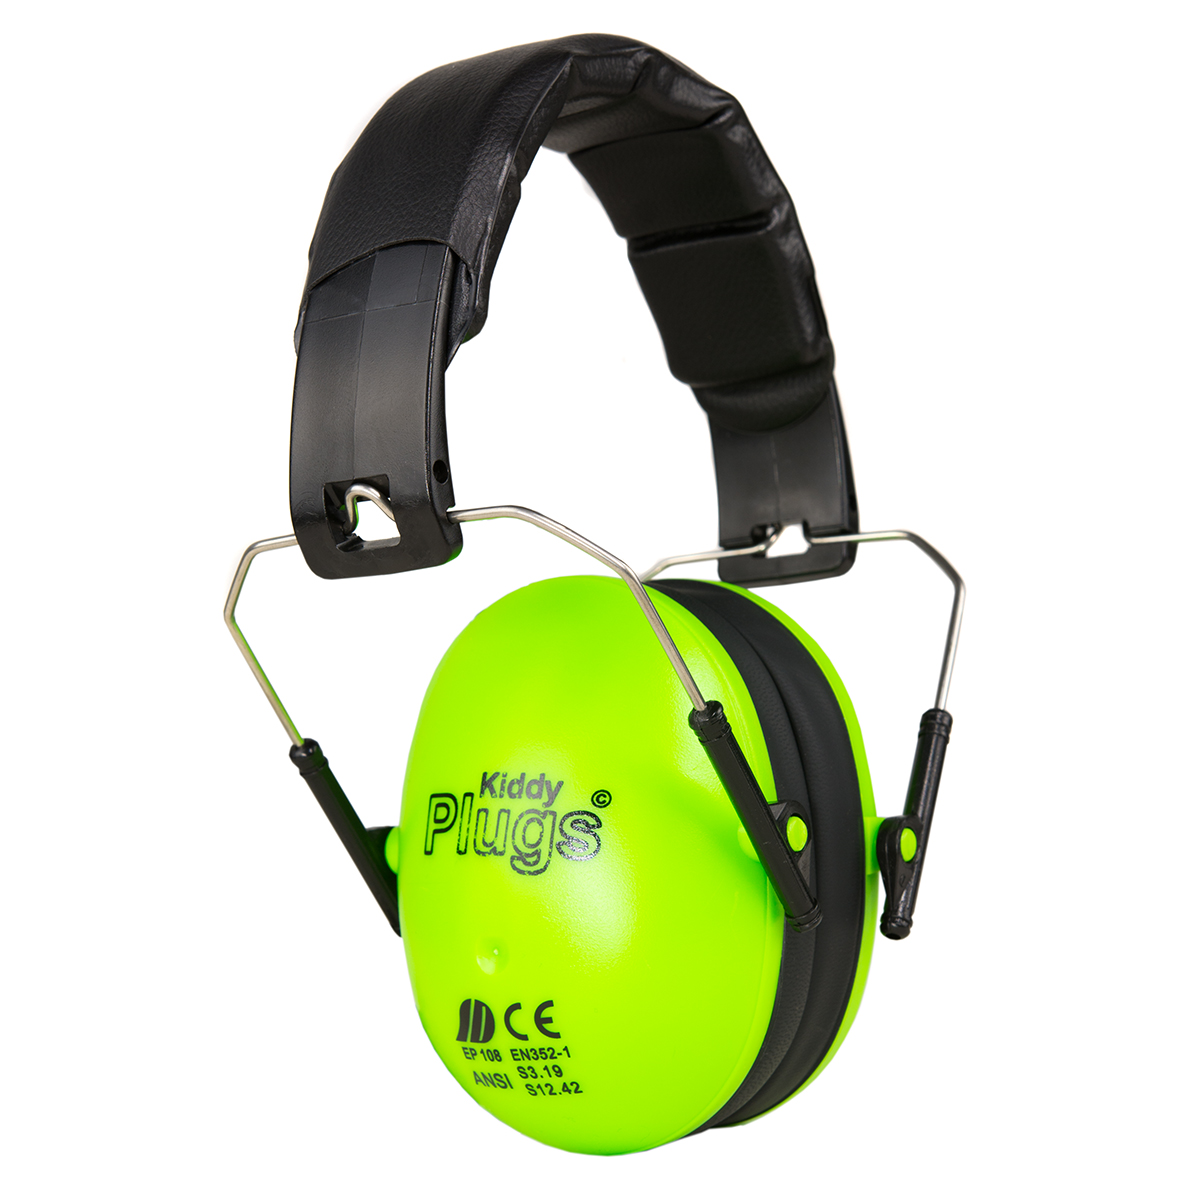 KiddyPlugs School Gehörschutz Kapsel-Kinder-Gehörschutz Lärmschutz Kopfhörer 